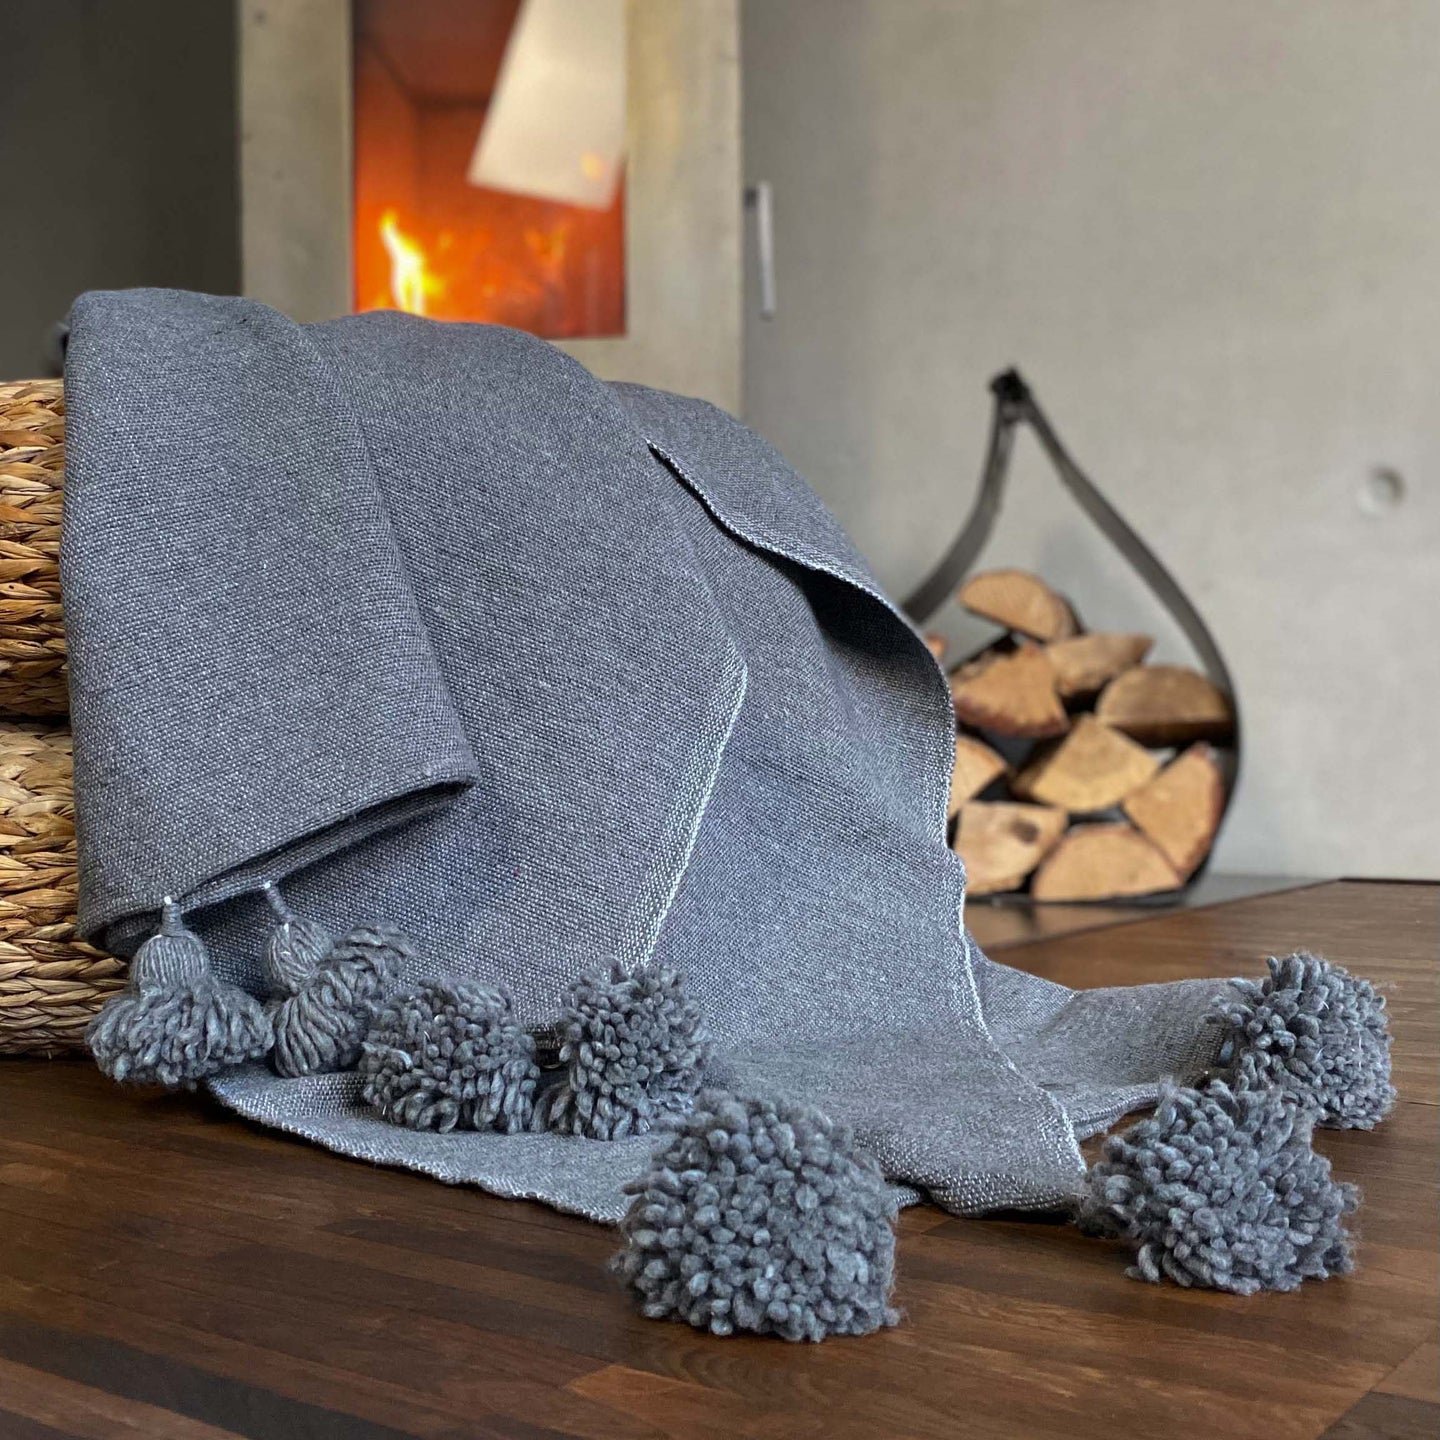 Eine handgewebte graue Pompom-Decke aus Baumwolle liegt auf einem Pouf vor einem Kaminofen.